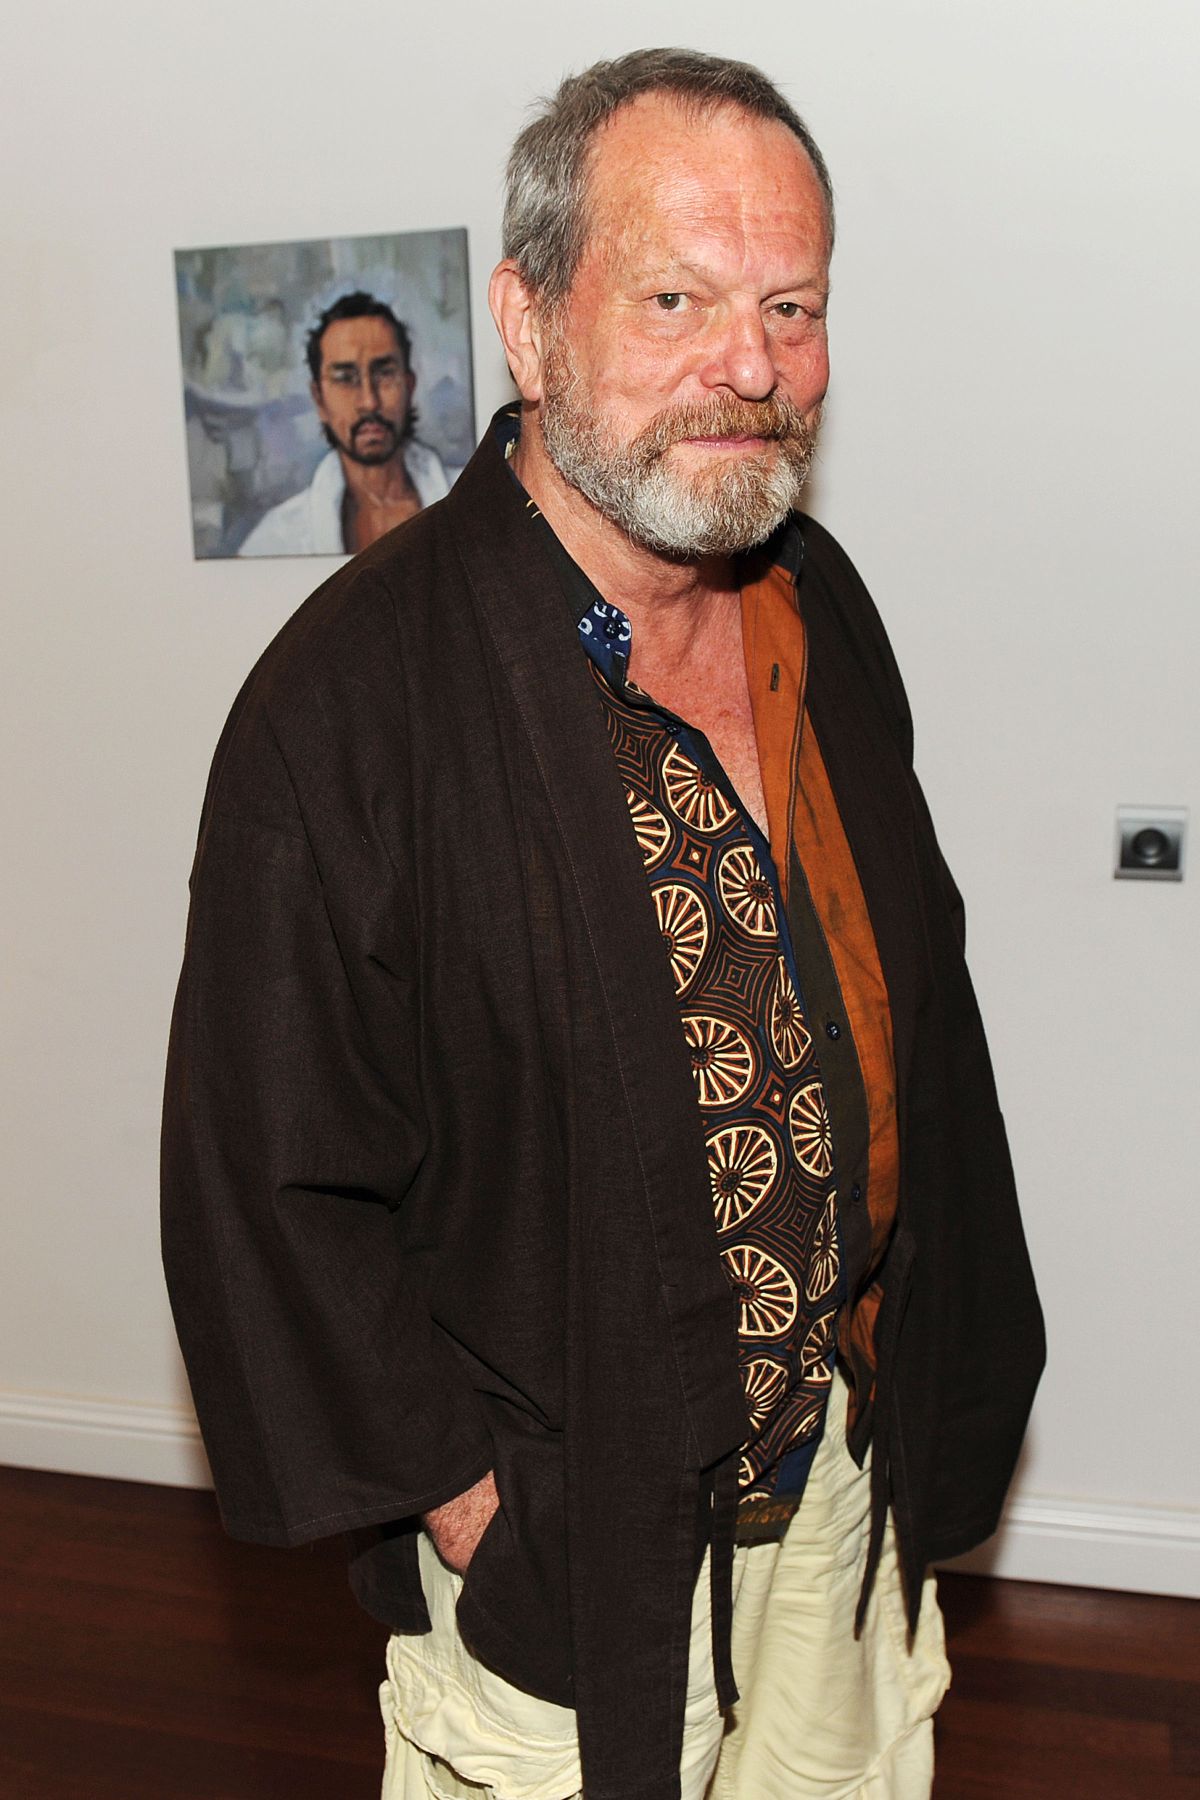 Terry Gilliam nie będzie już kręcił filmów?